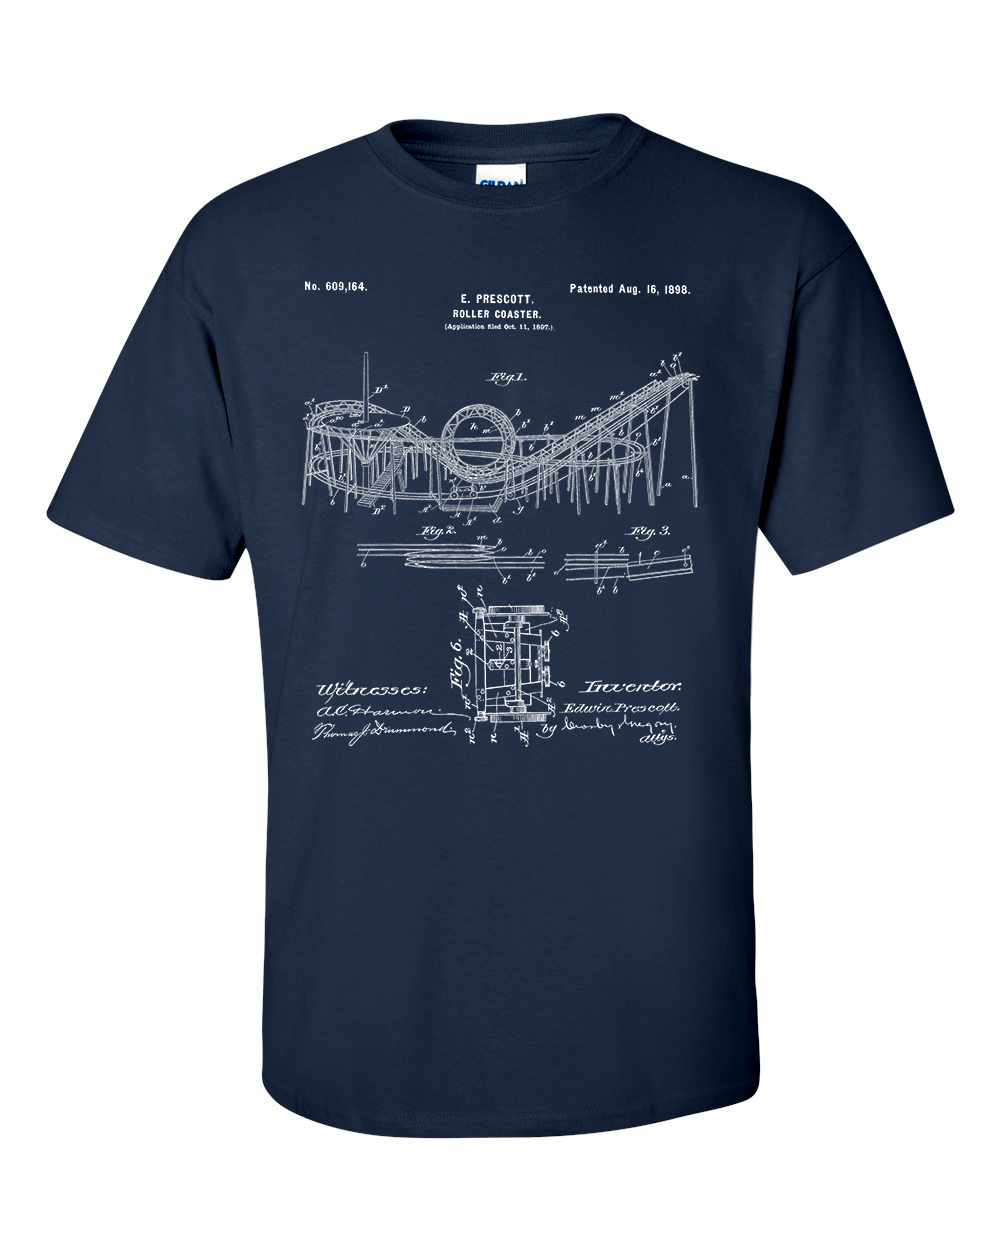 Rollercoaster Patent Blueprint T-Shirt